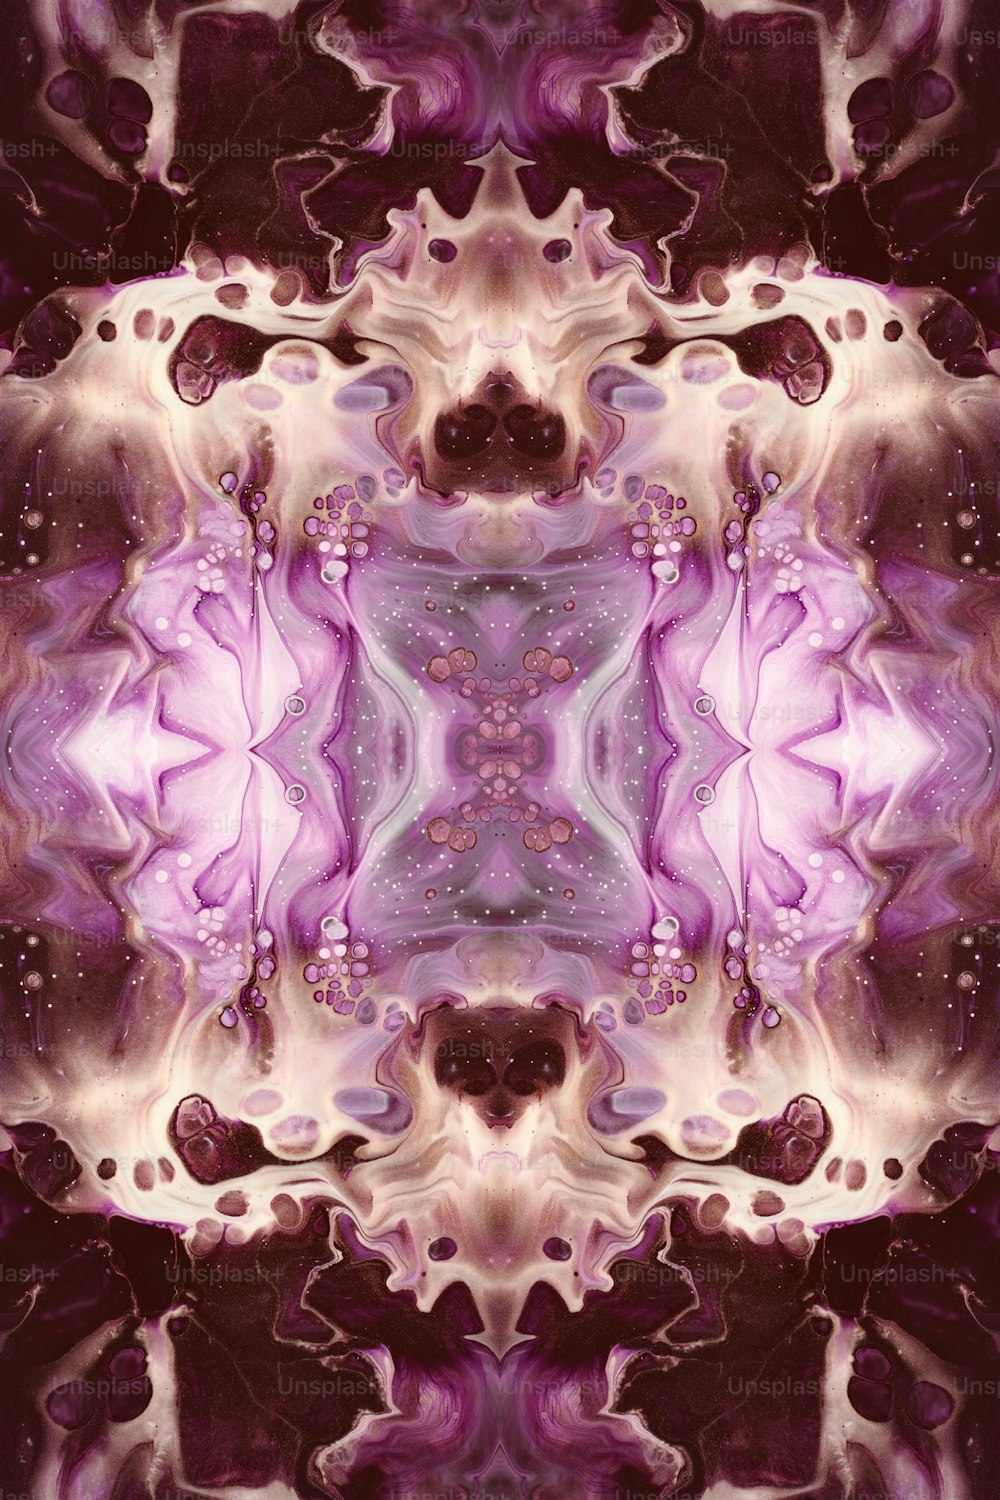 uma imagem gerada por computador de uma flor roxa